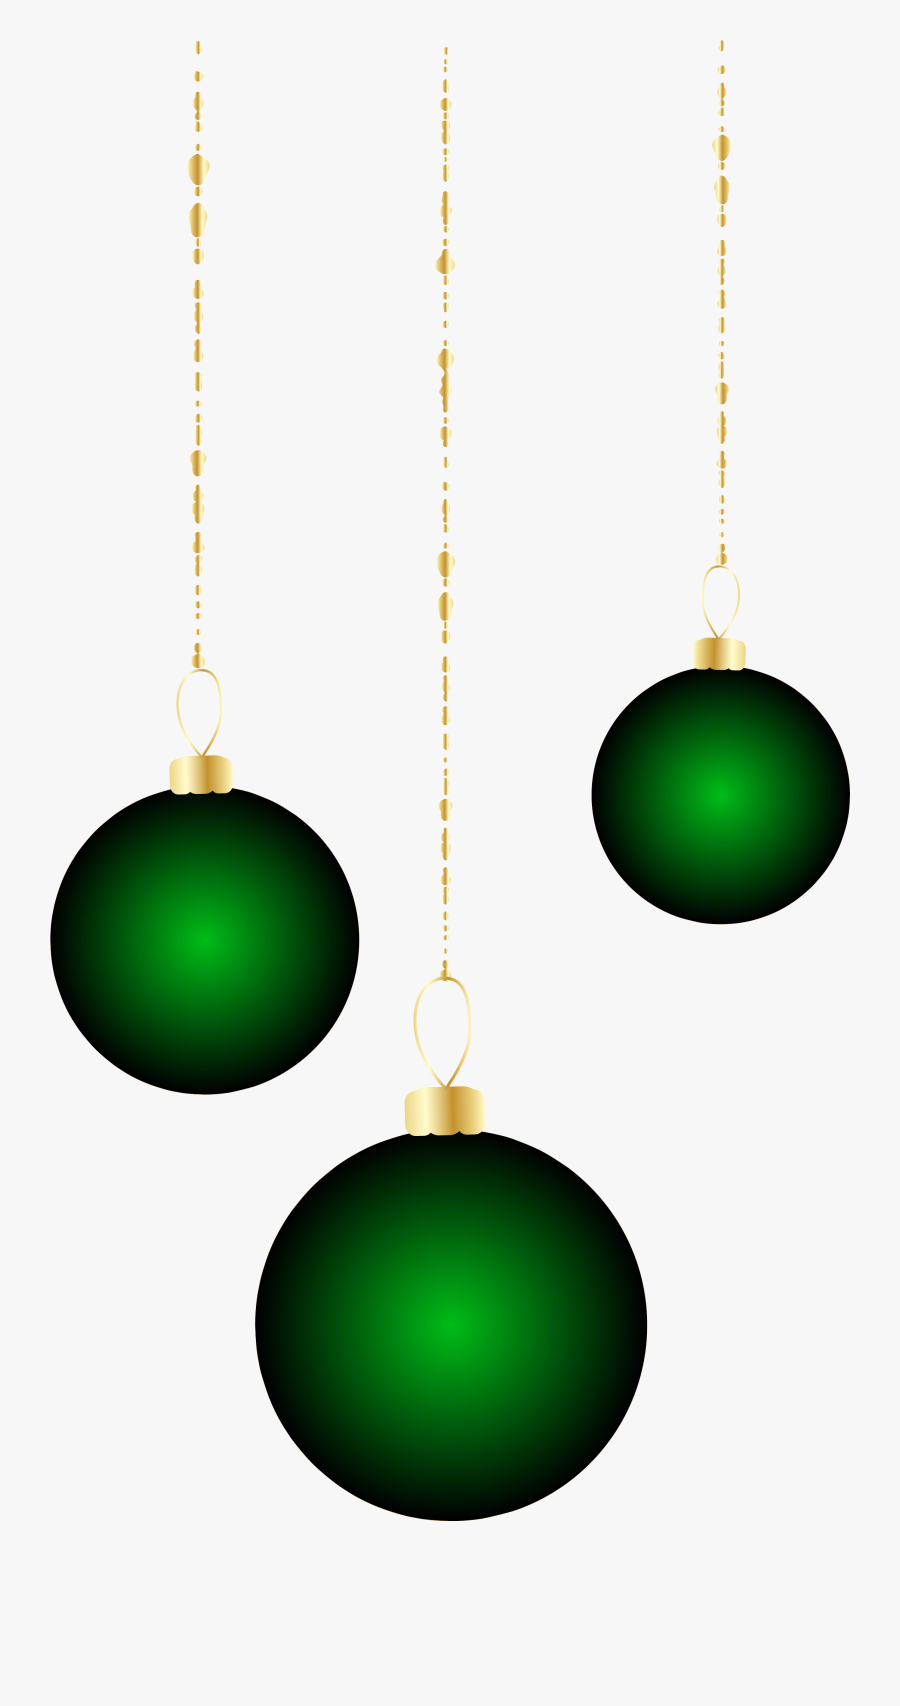 Transparent Christmas Green Ornaments Png Clipart - Clip Art, Transparent Clipart